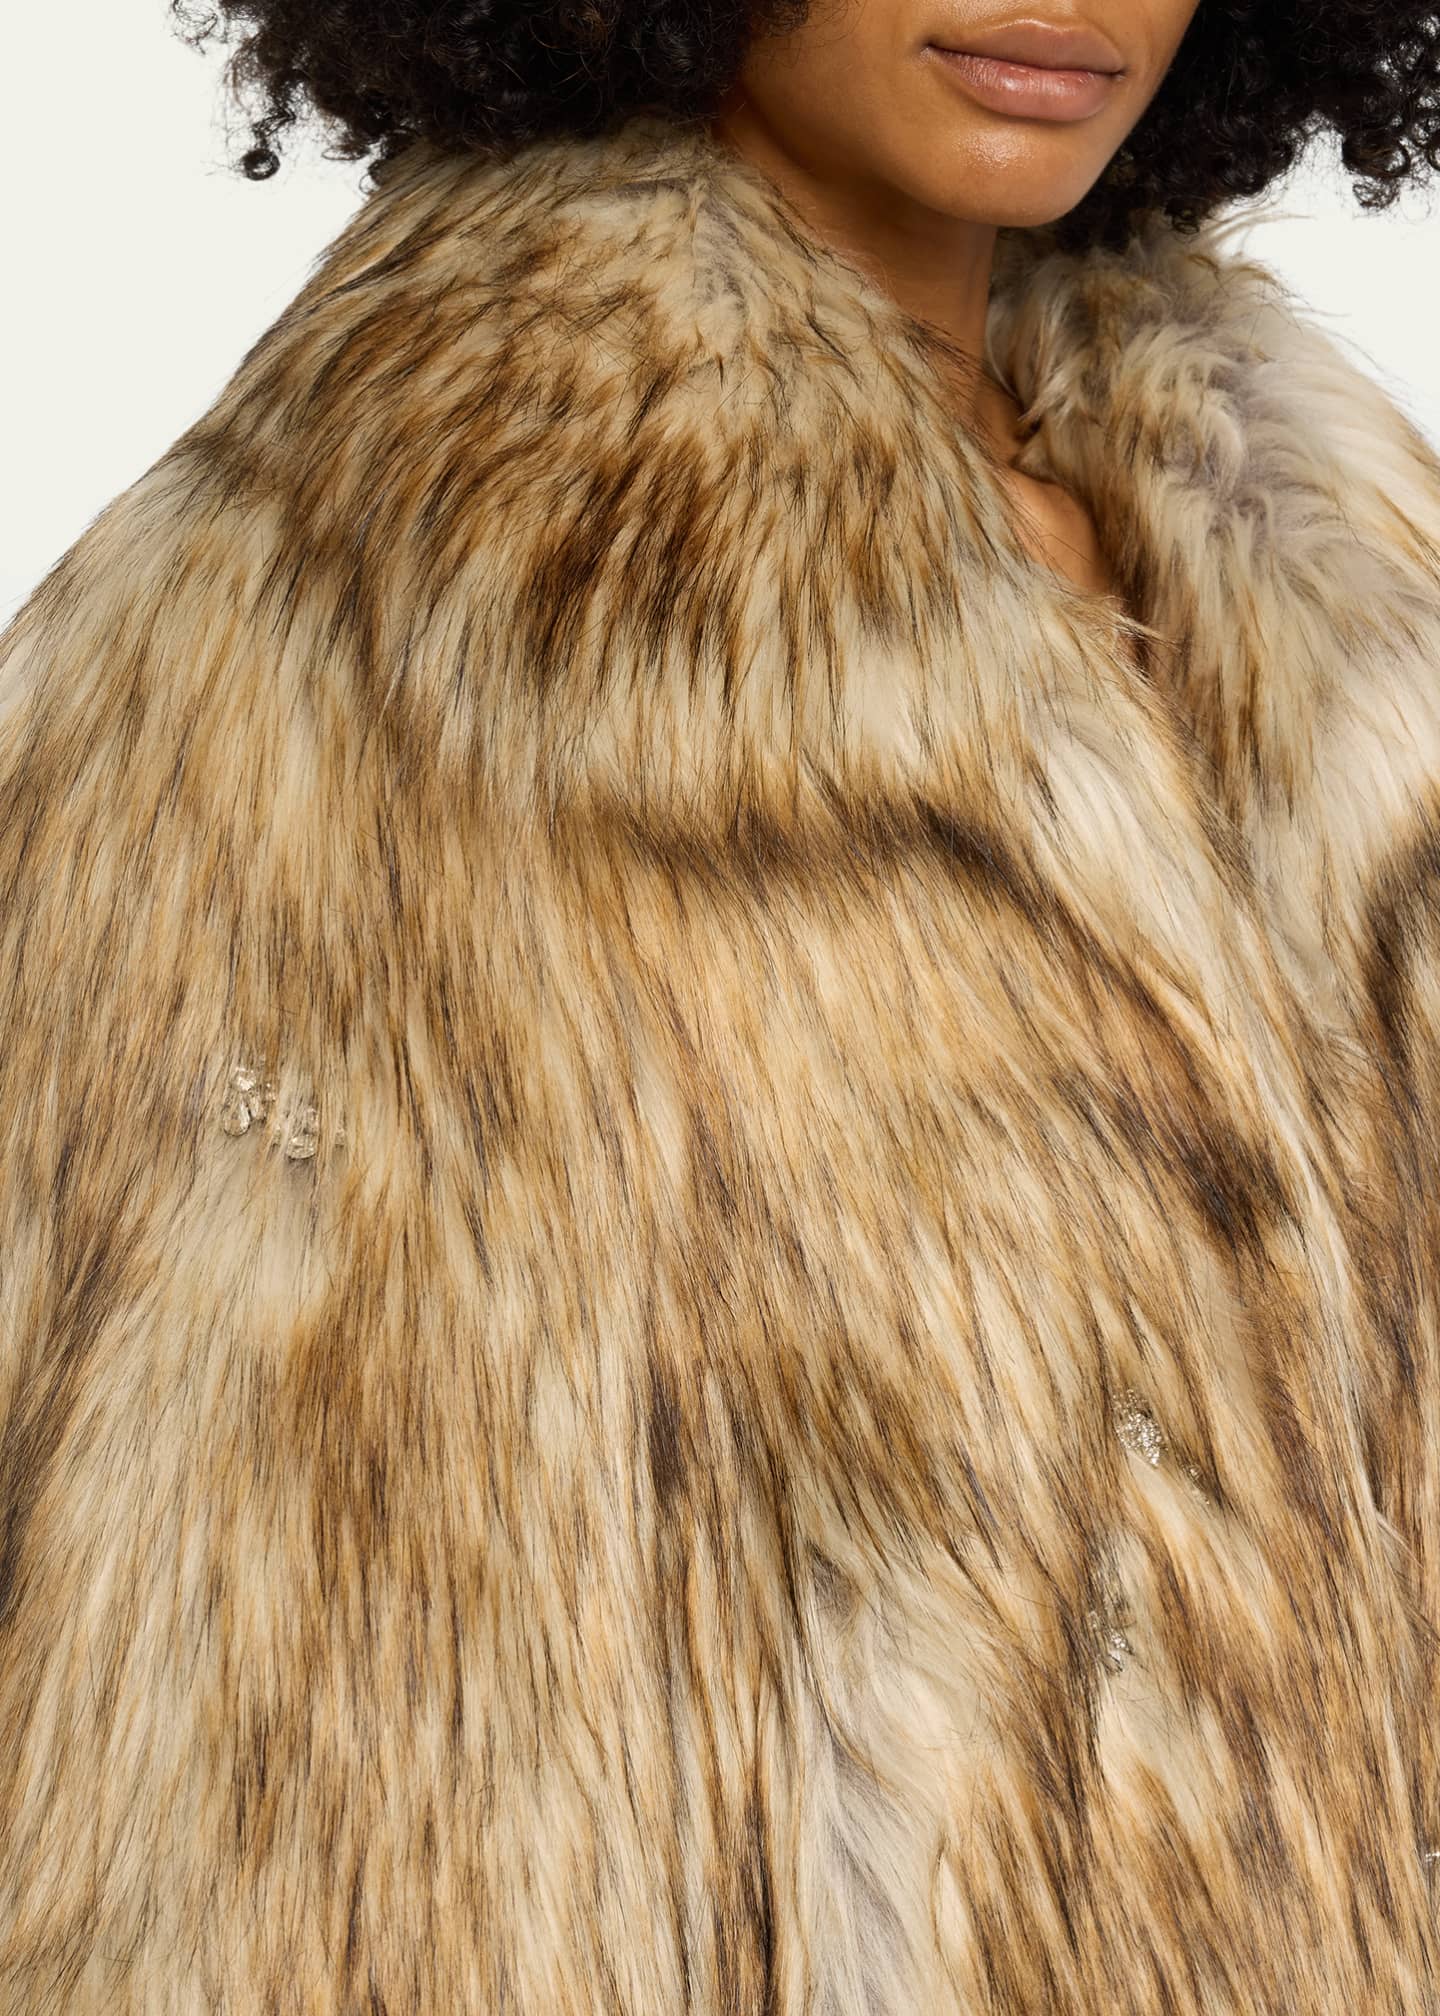 Topshop Faux Fur Coat